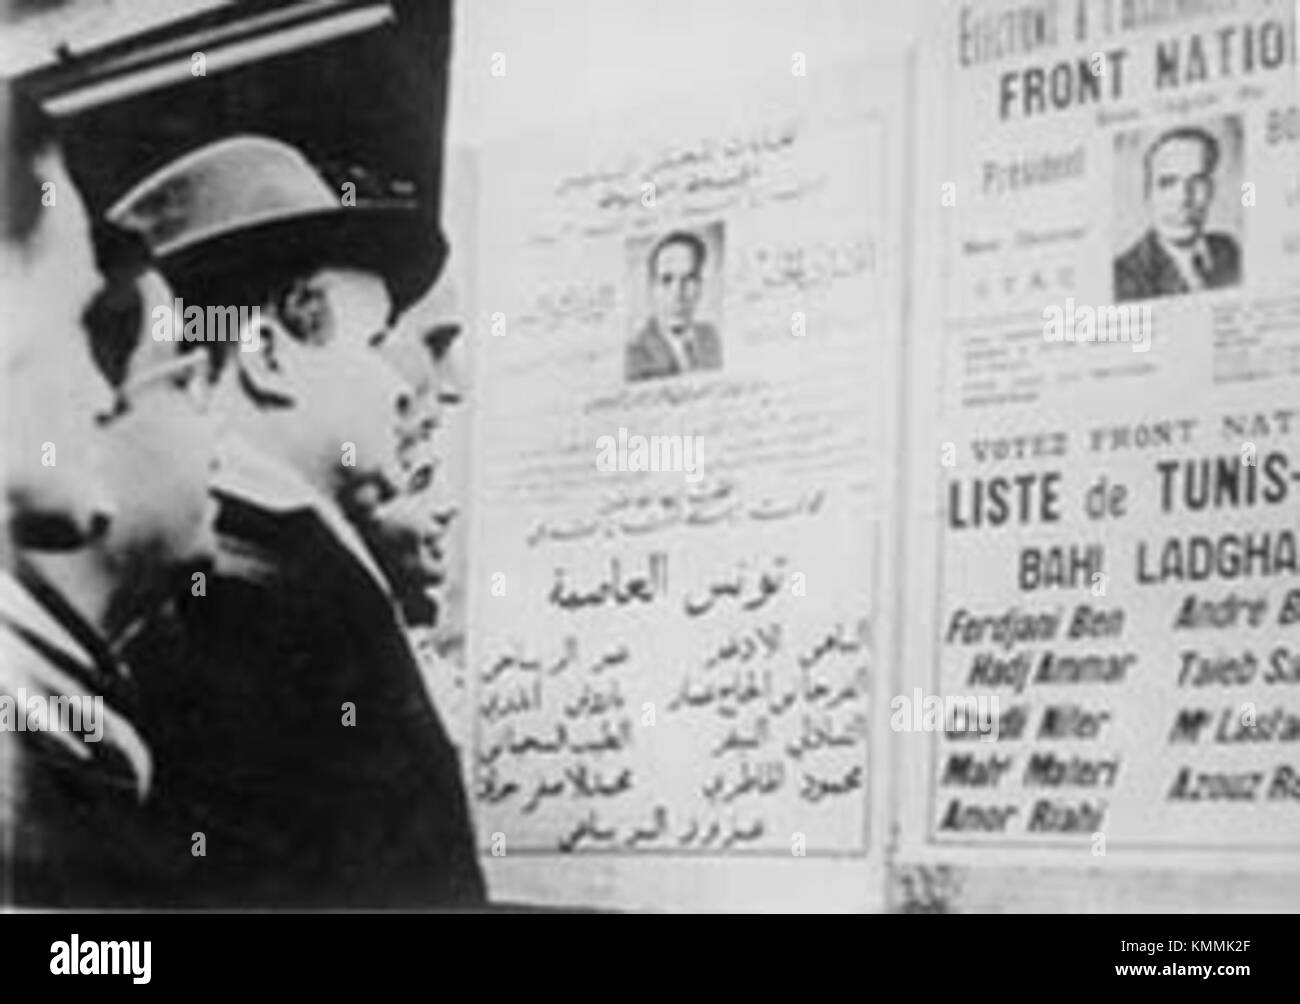 Campagna elettorale - Assemblea nazionale - Tunisia - 1956 Foto Stock